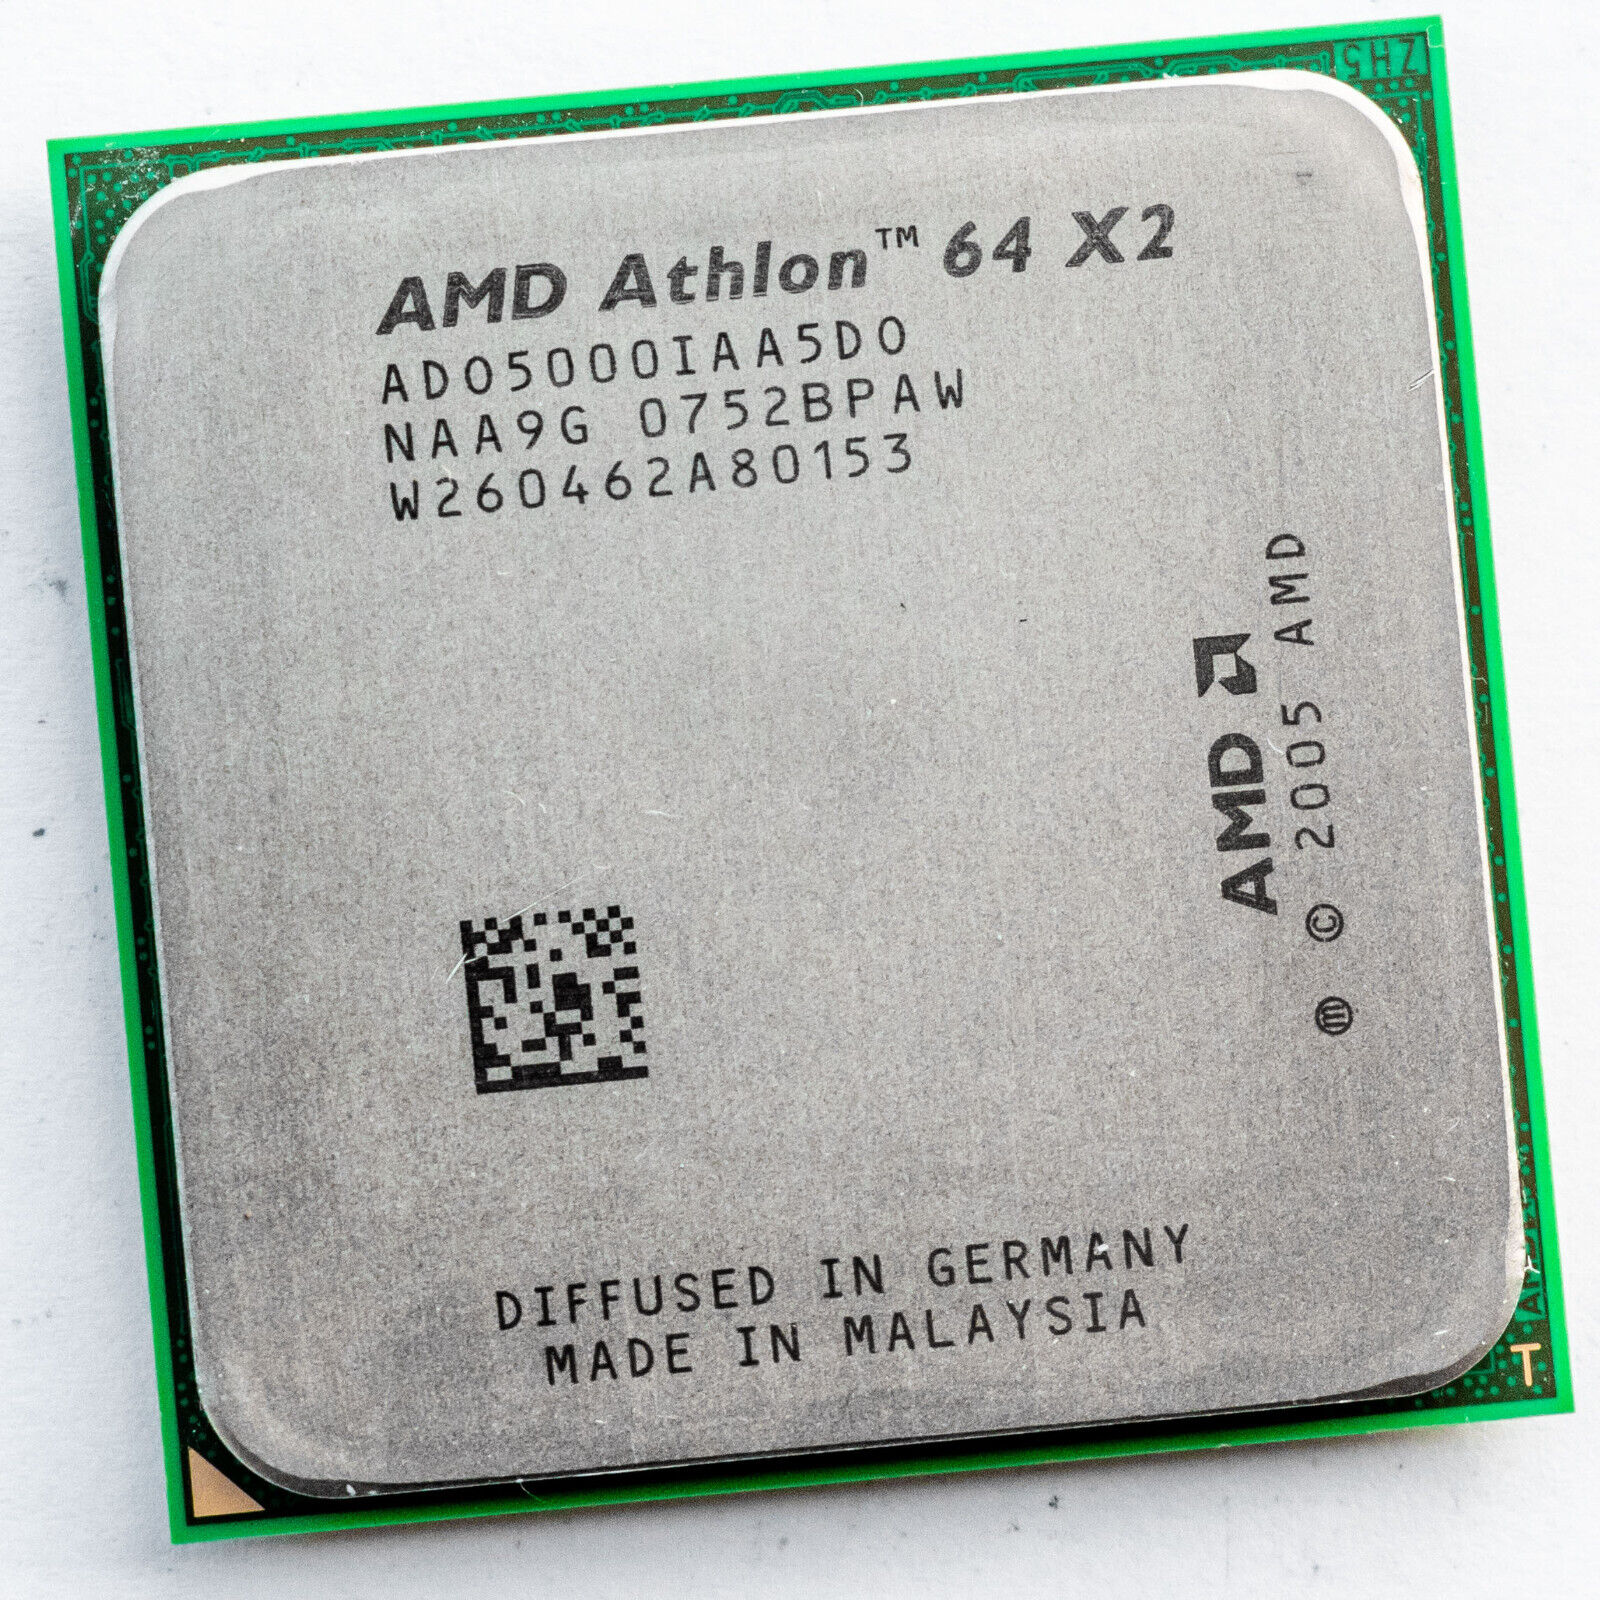 AMD Athlon 64 X2 5000+ ADO5000IAA5DO 2.6GHz Dual Core AM2 Processor G2 Brisbane